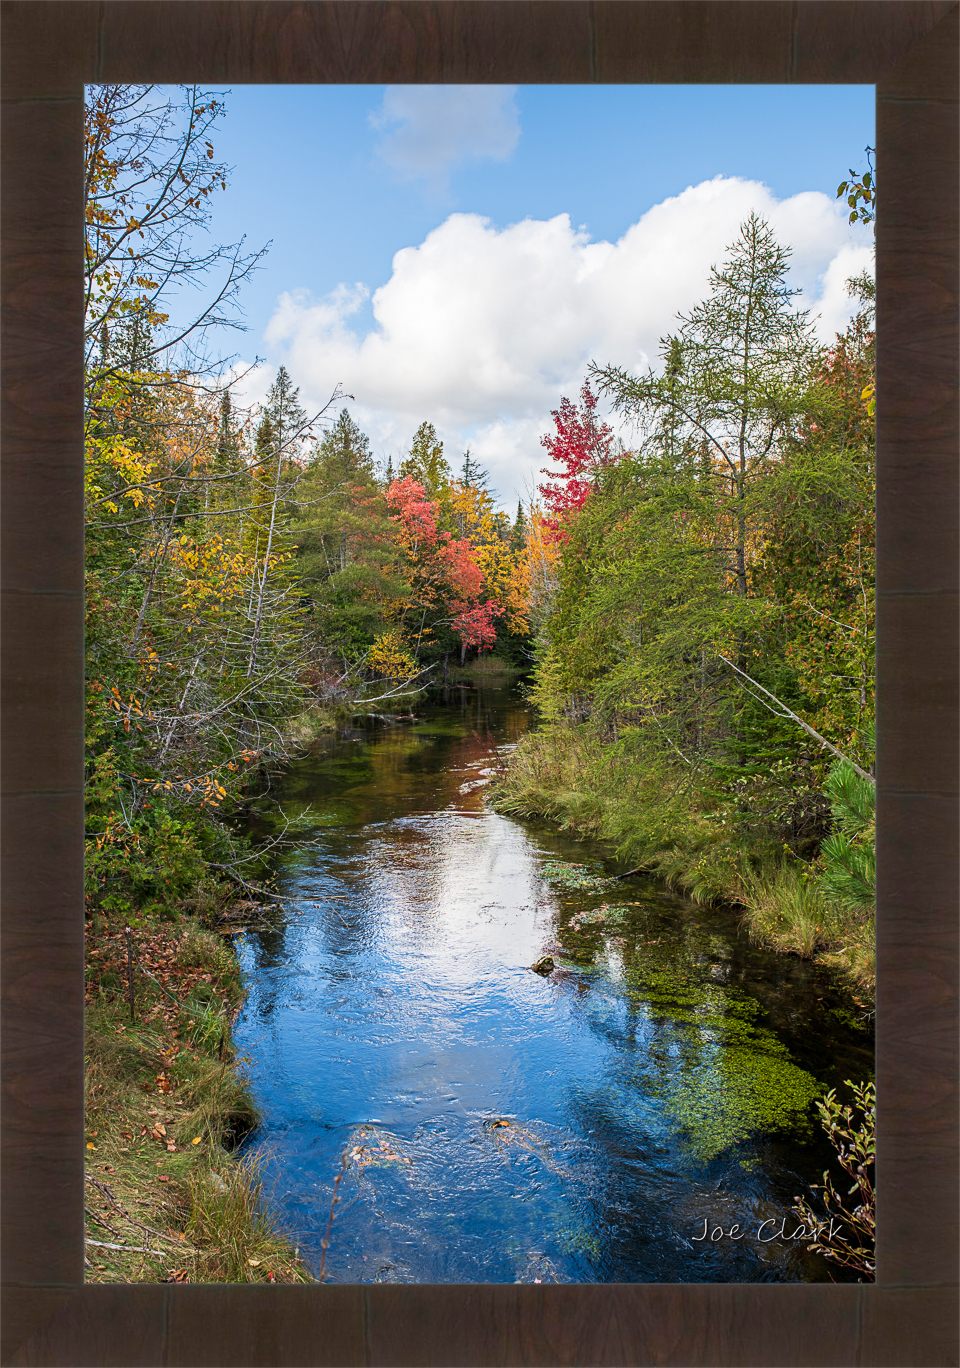 Horton Creek in Fall 2 by Joe Clark R60545